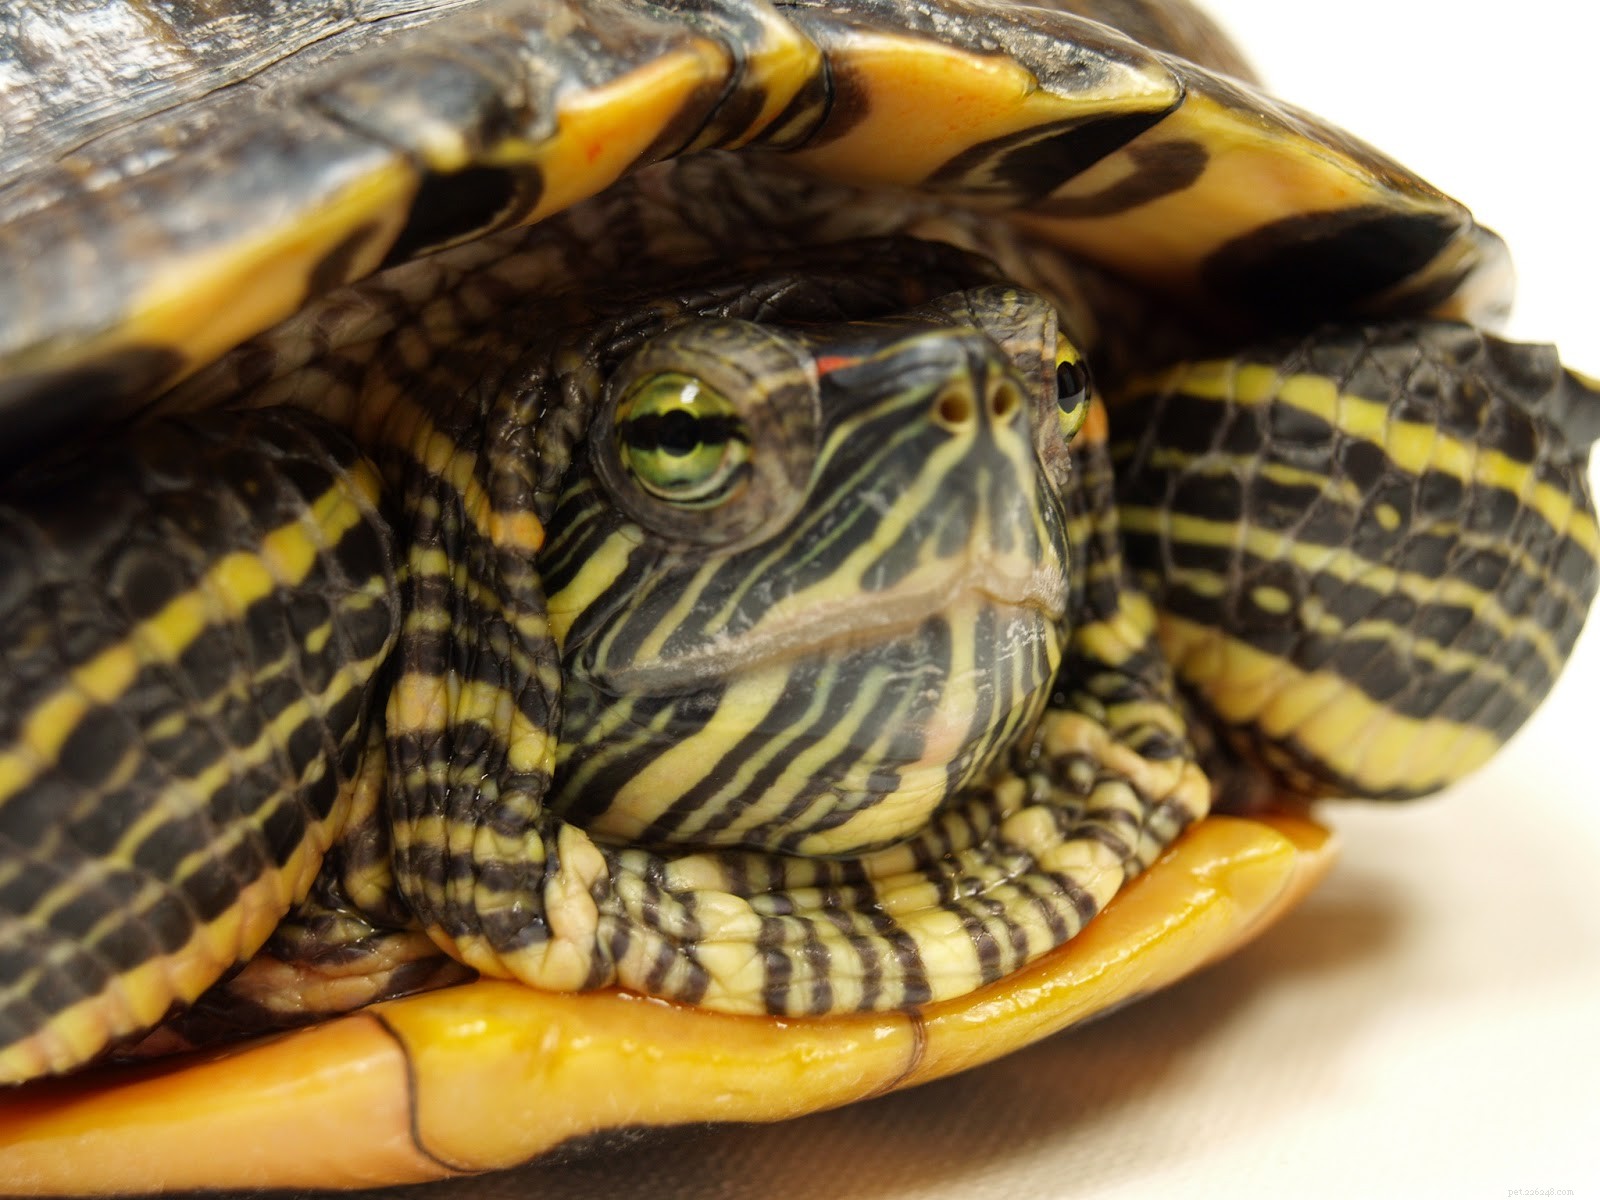 Les tortues domestiques peuvent-elles tomber malades ?